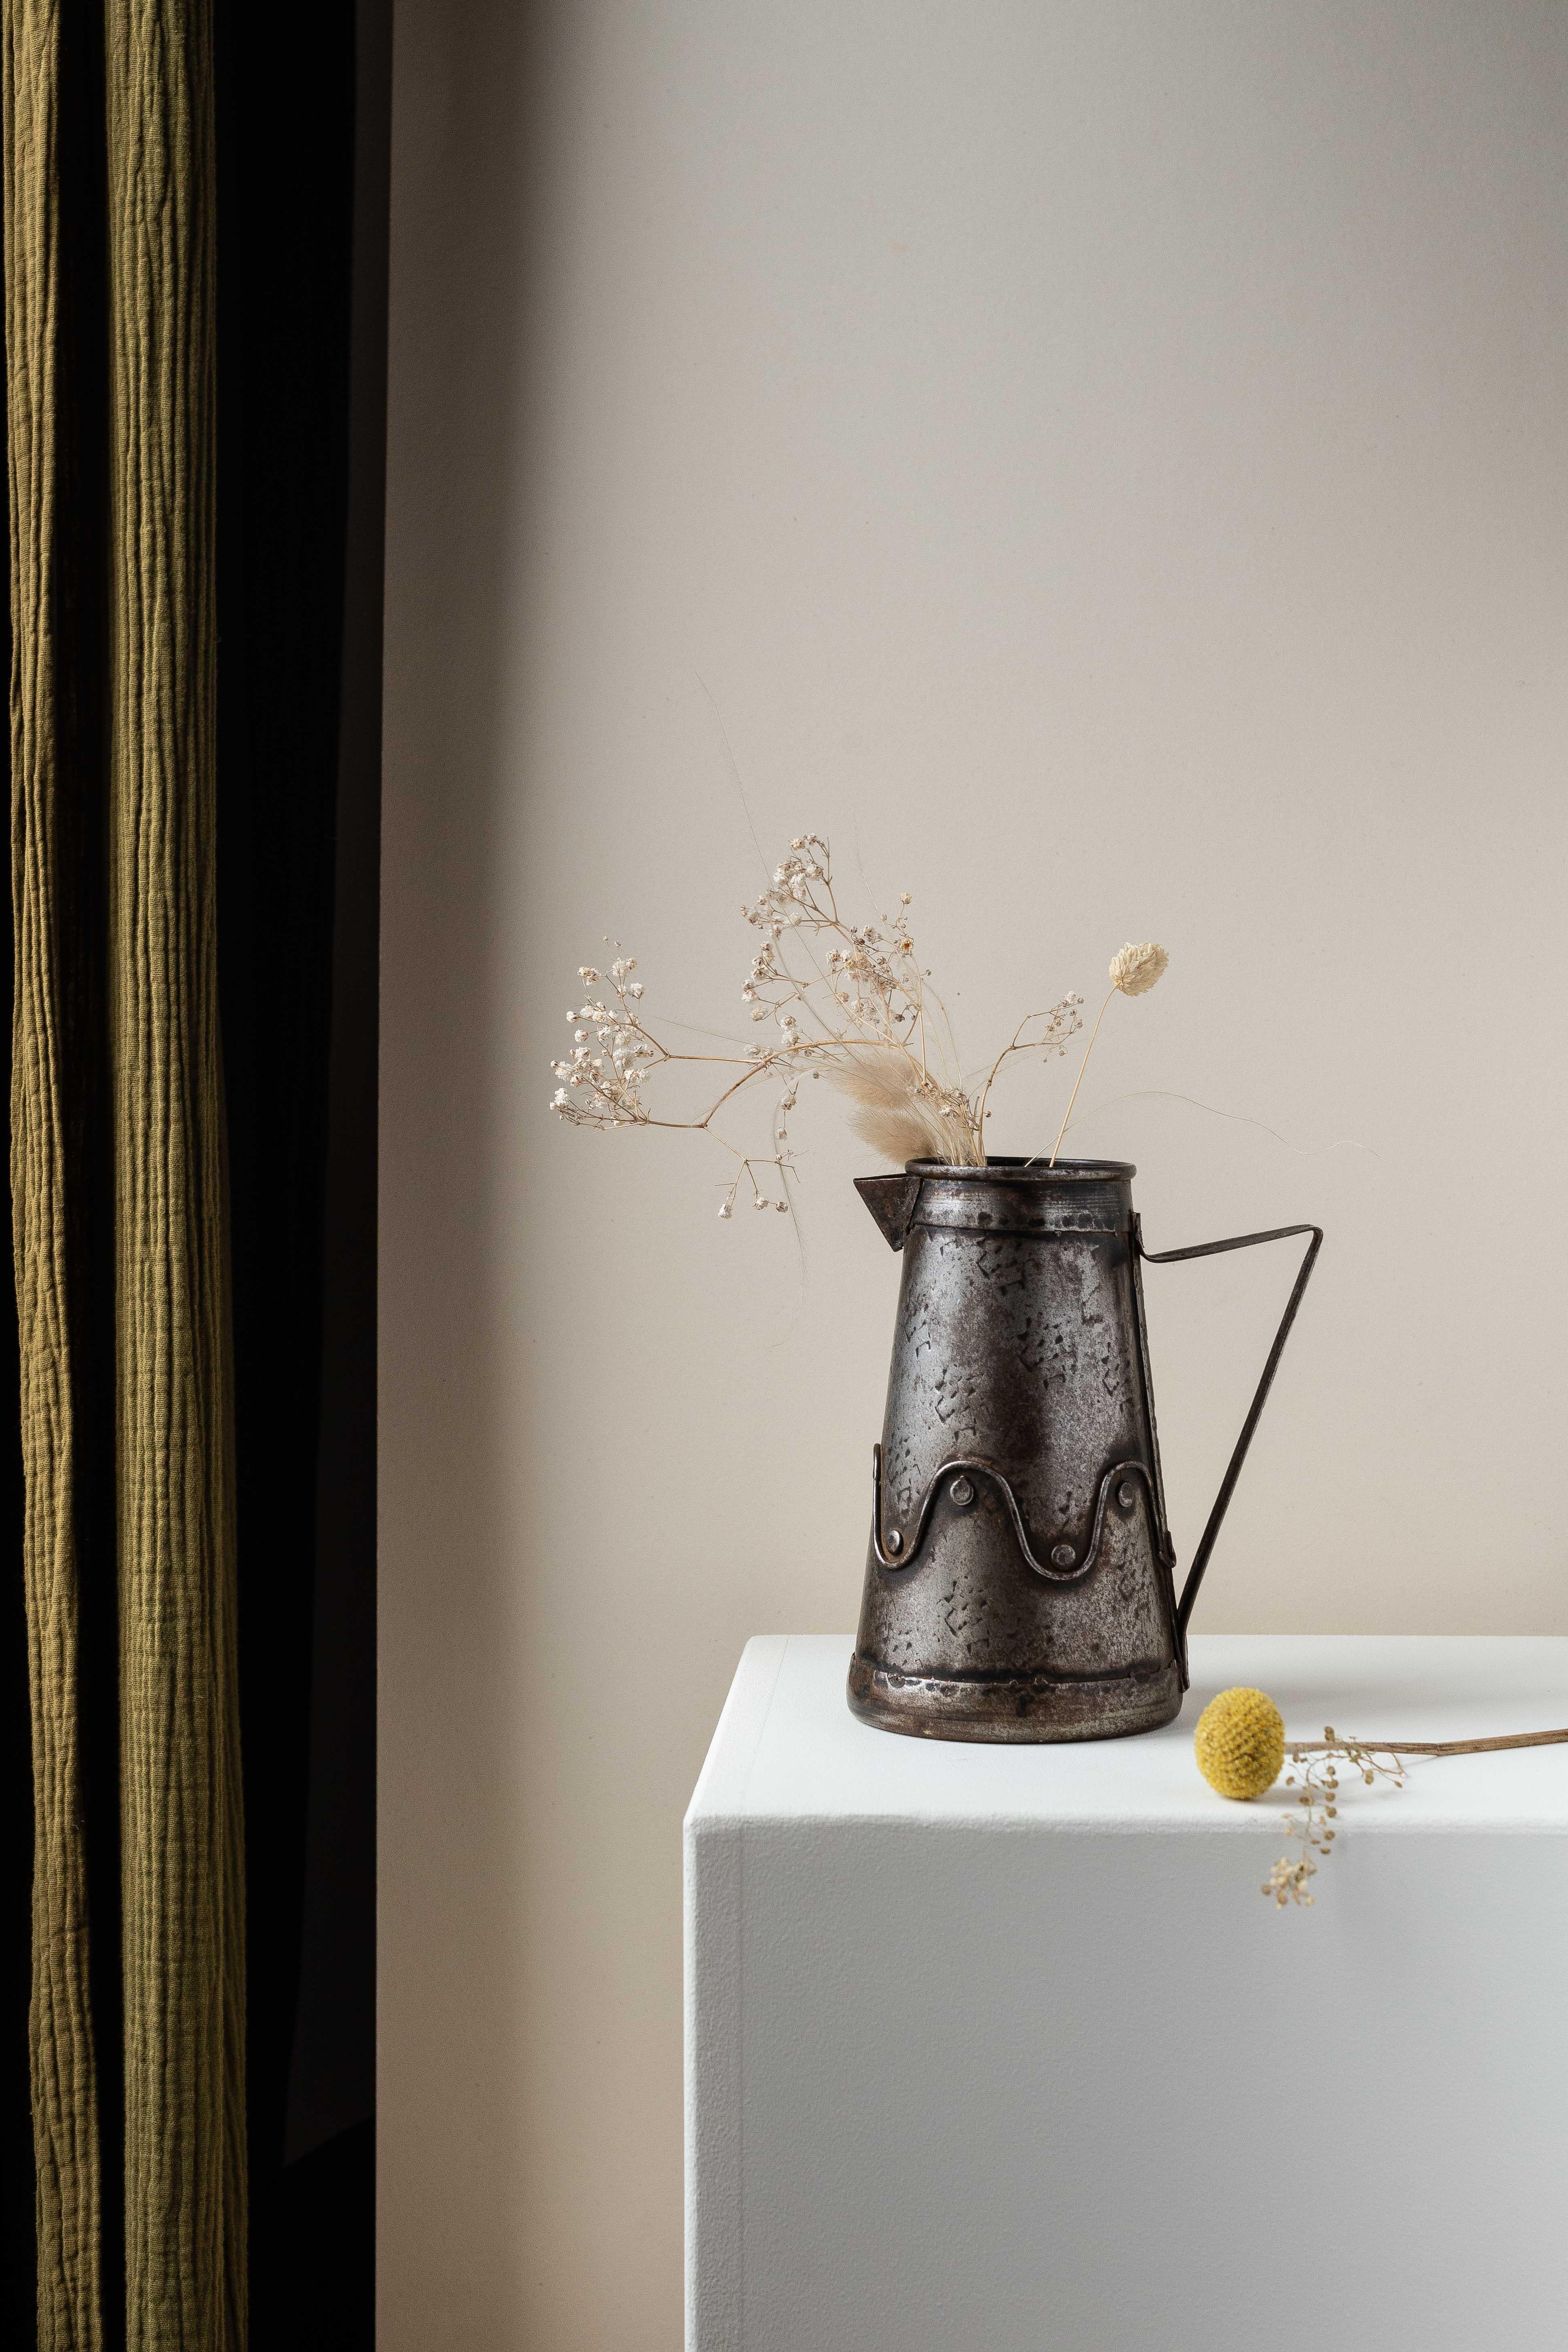 Carafe ou pichet en métal brossé, France Circa 1950.

Une belle pièce d'art populaire, initialement destinée à servir de l'eau et des boissons.

Serait très décoratif, utilisé comme vase, pour des fleurs séchées ou fraîches.

Très beau travail du